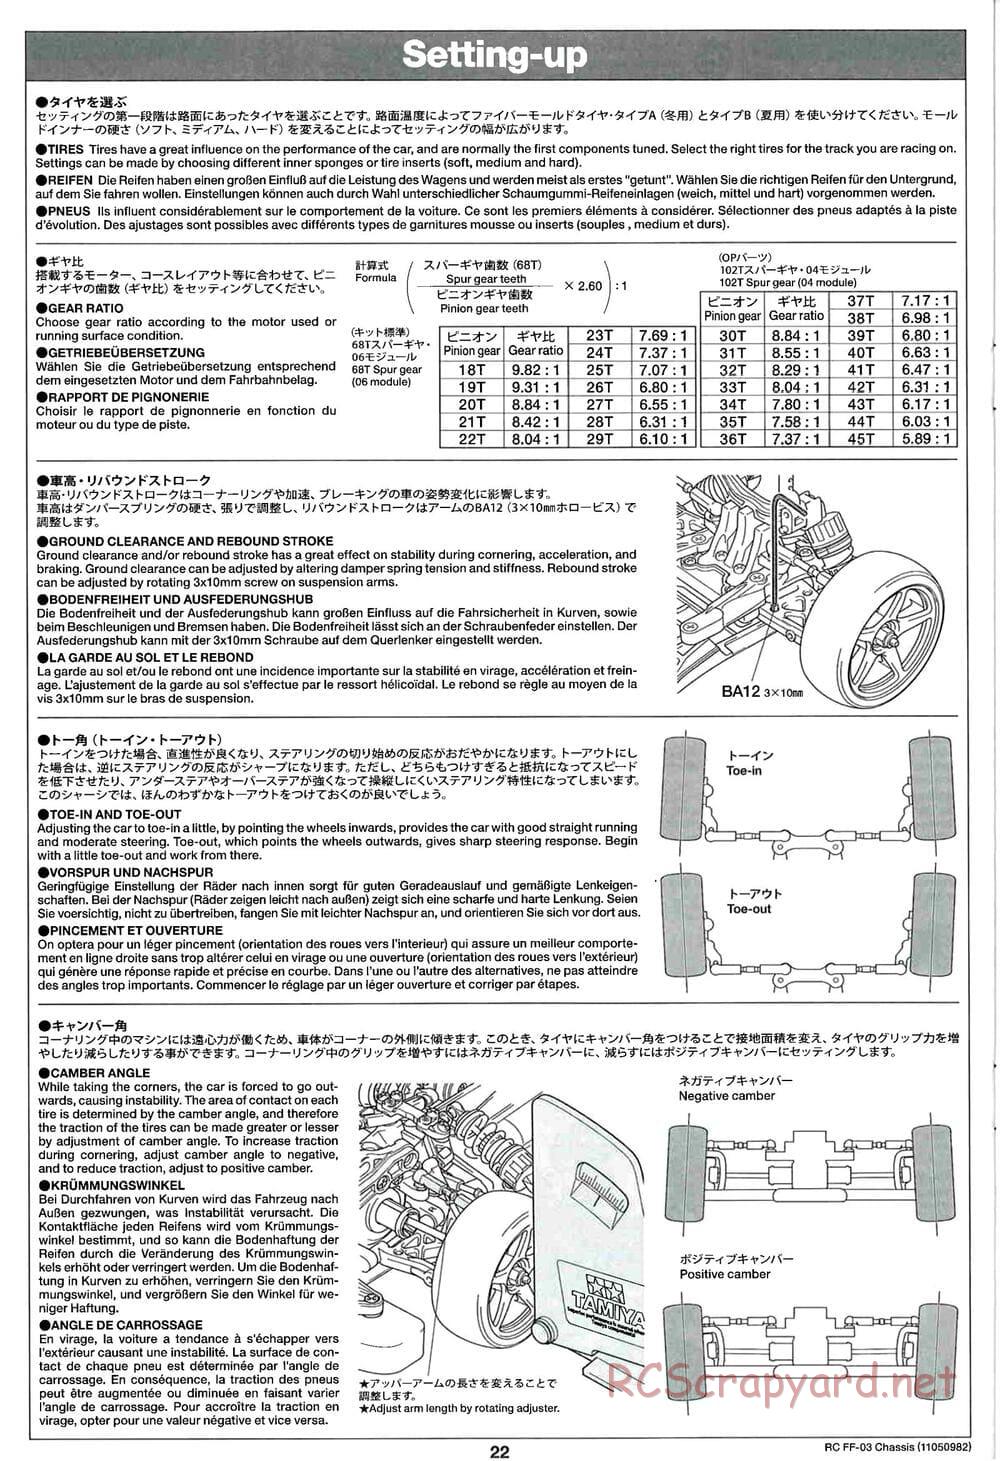 Tamiya - Honda Accord Aero Custom - FF-03 Chassis - Manual - Page 22